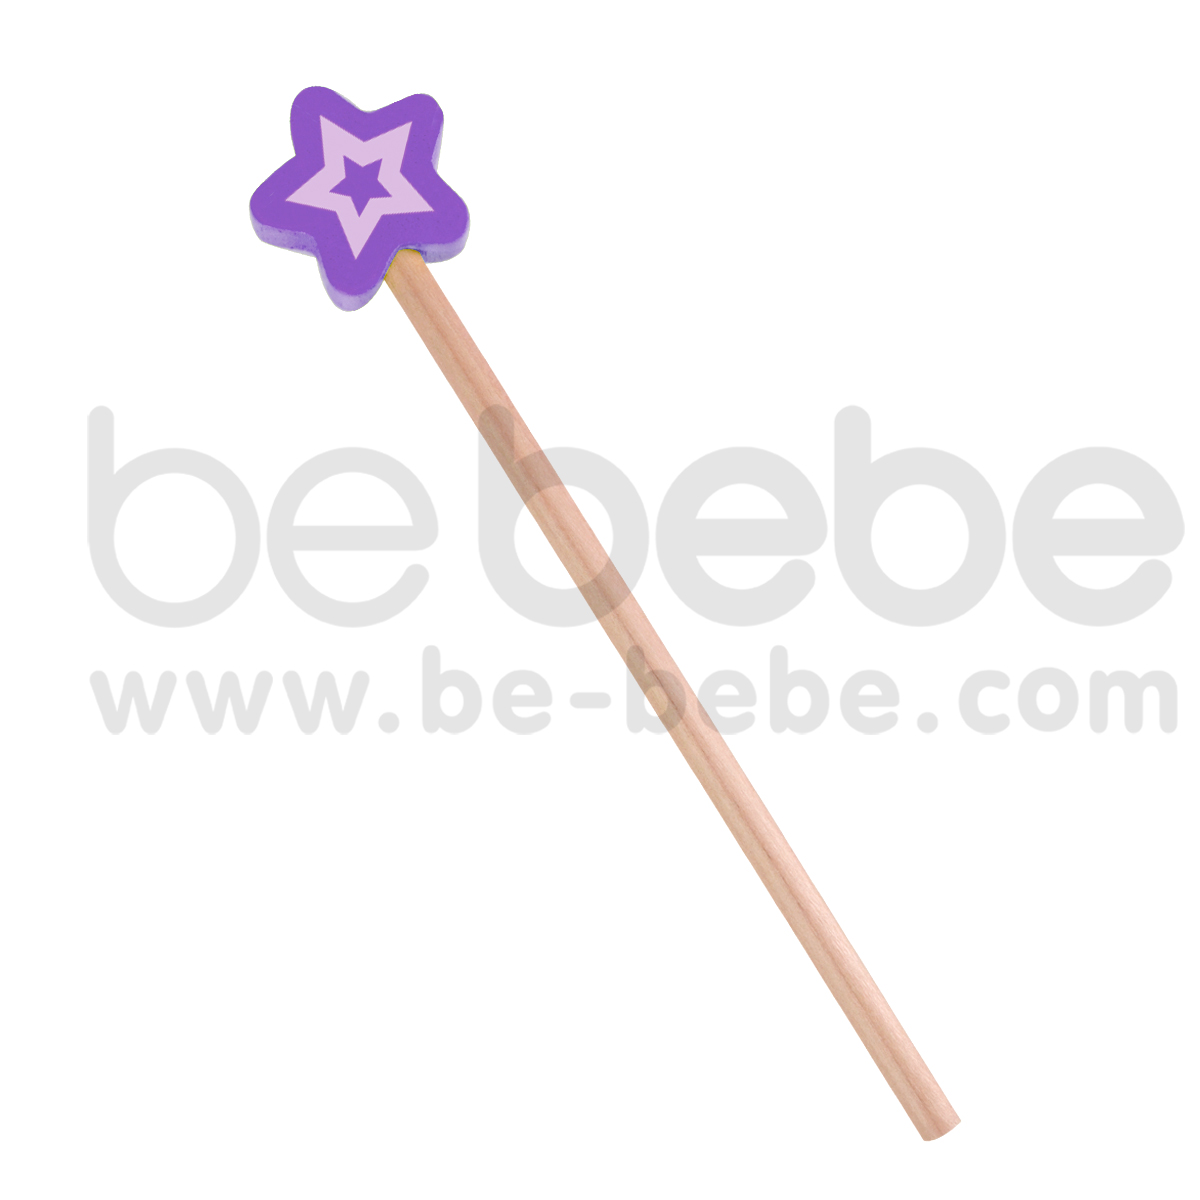 bebebe : ดินสอS ดาว/ม่วง